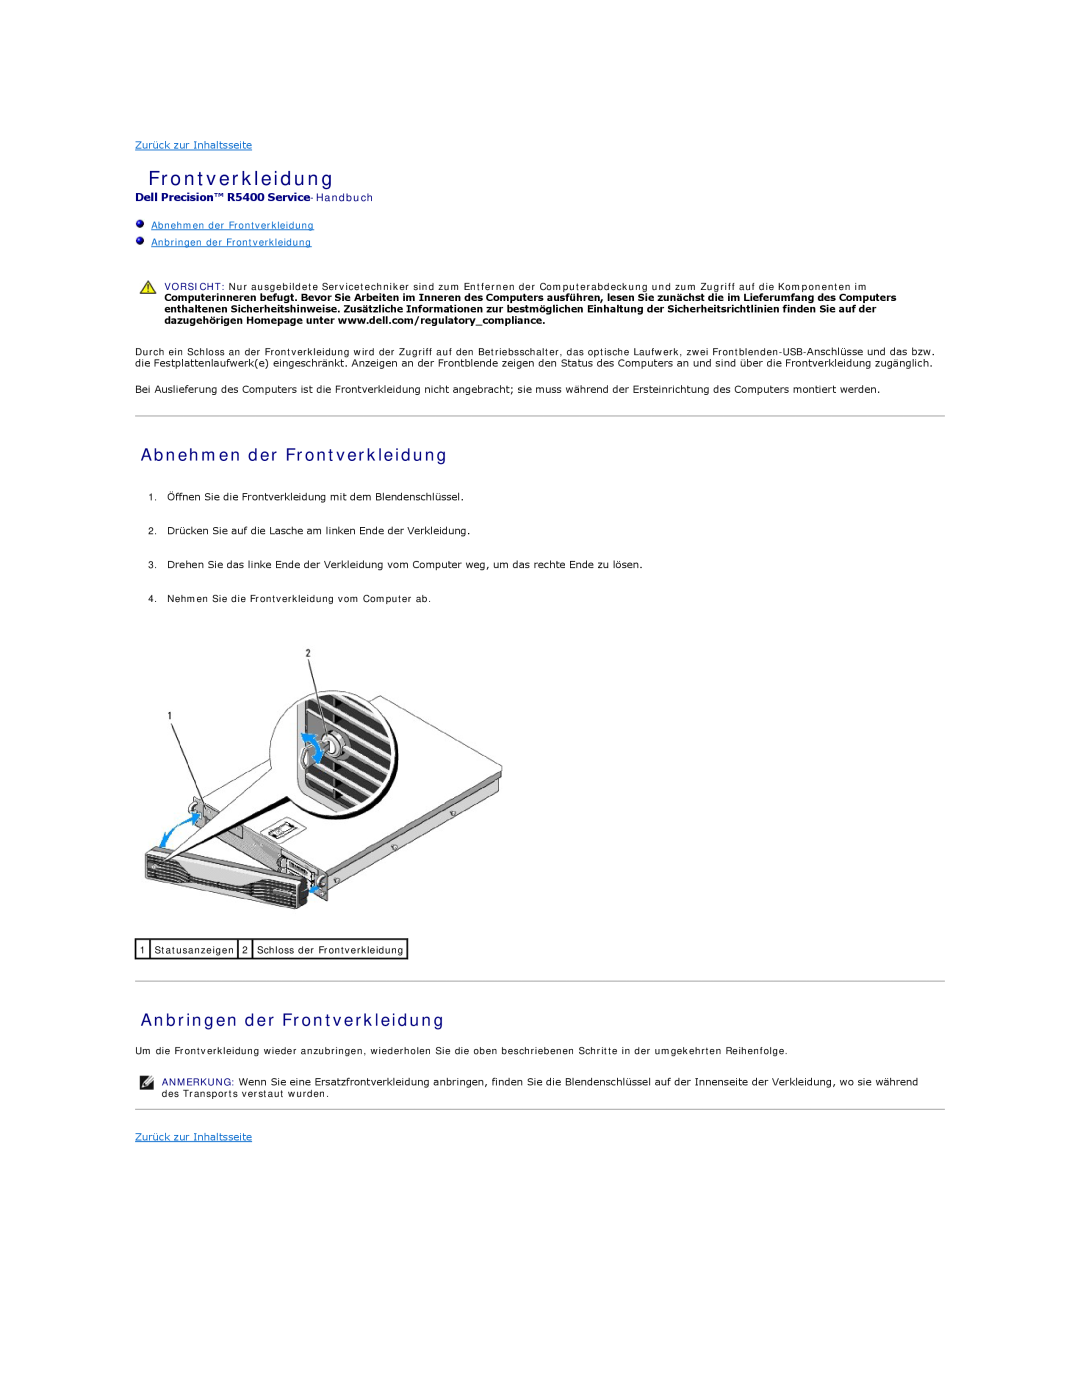 Dell manual Abnehmen der Frontverkleidung, Anbringen der Frontverkleidung, Dell Precision R5400 Service-Handbuch 